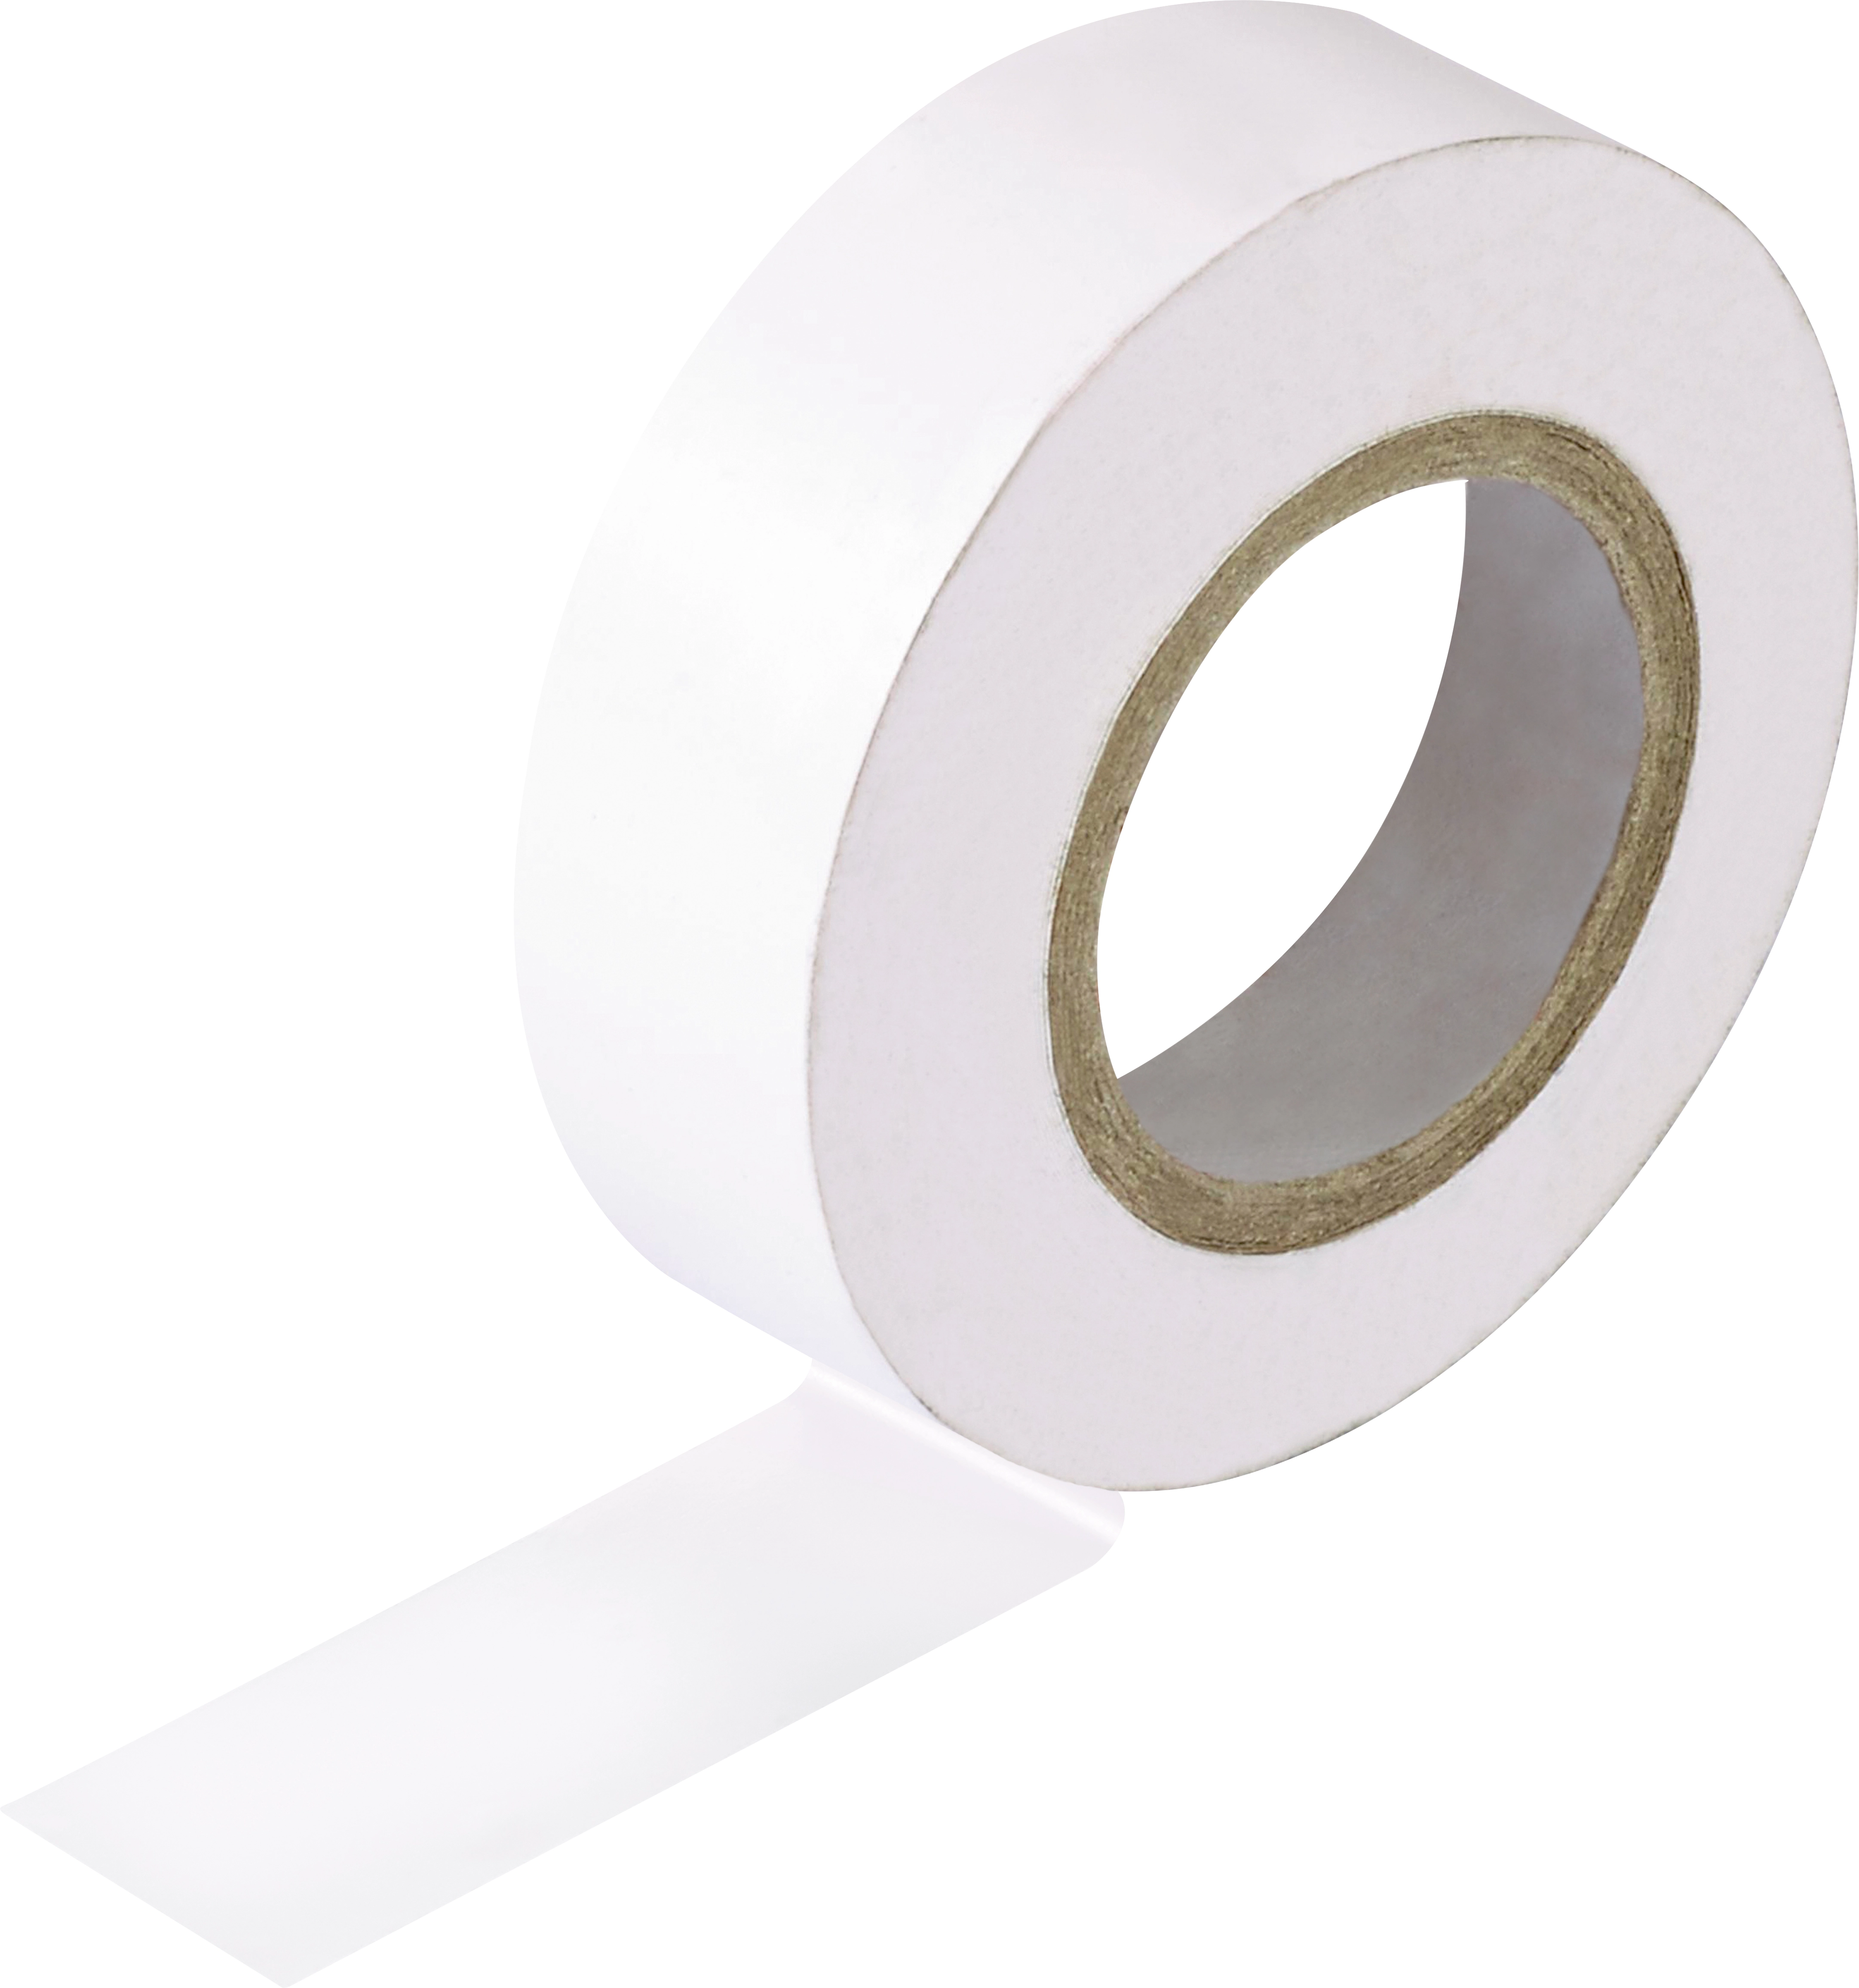 Isolierband Weiß 15 mm x 10 m kaufen bei OBI